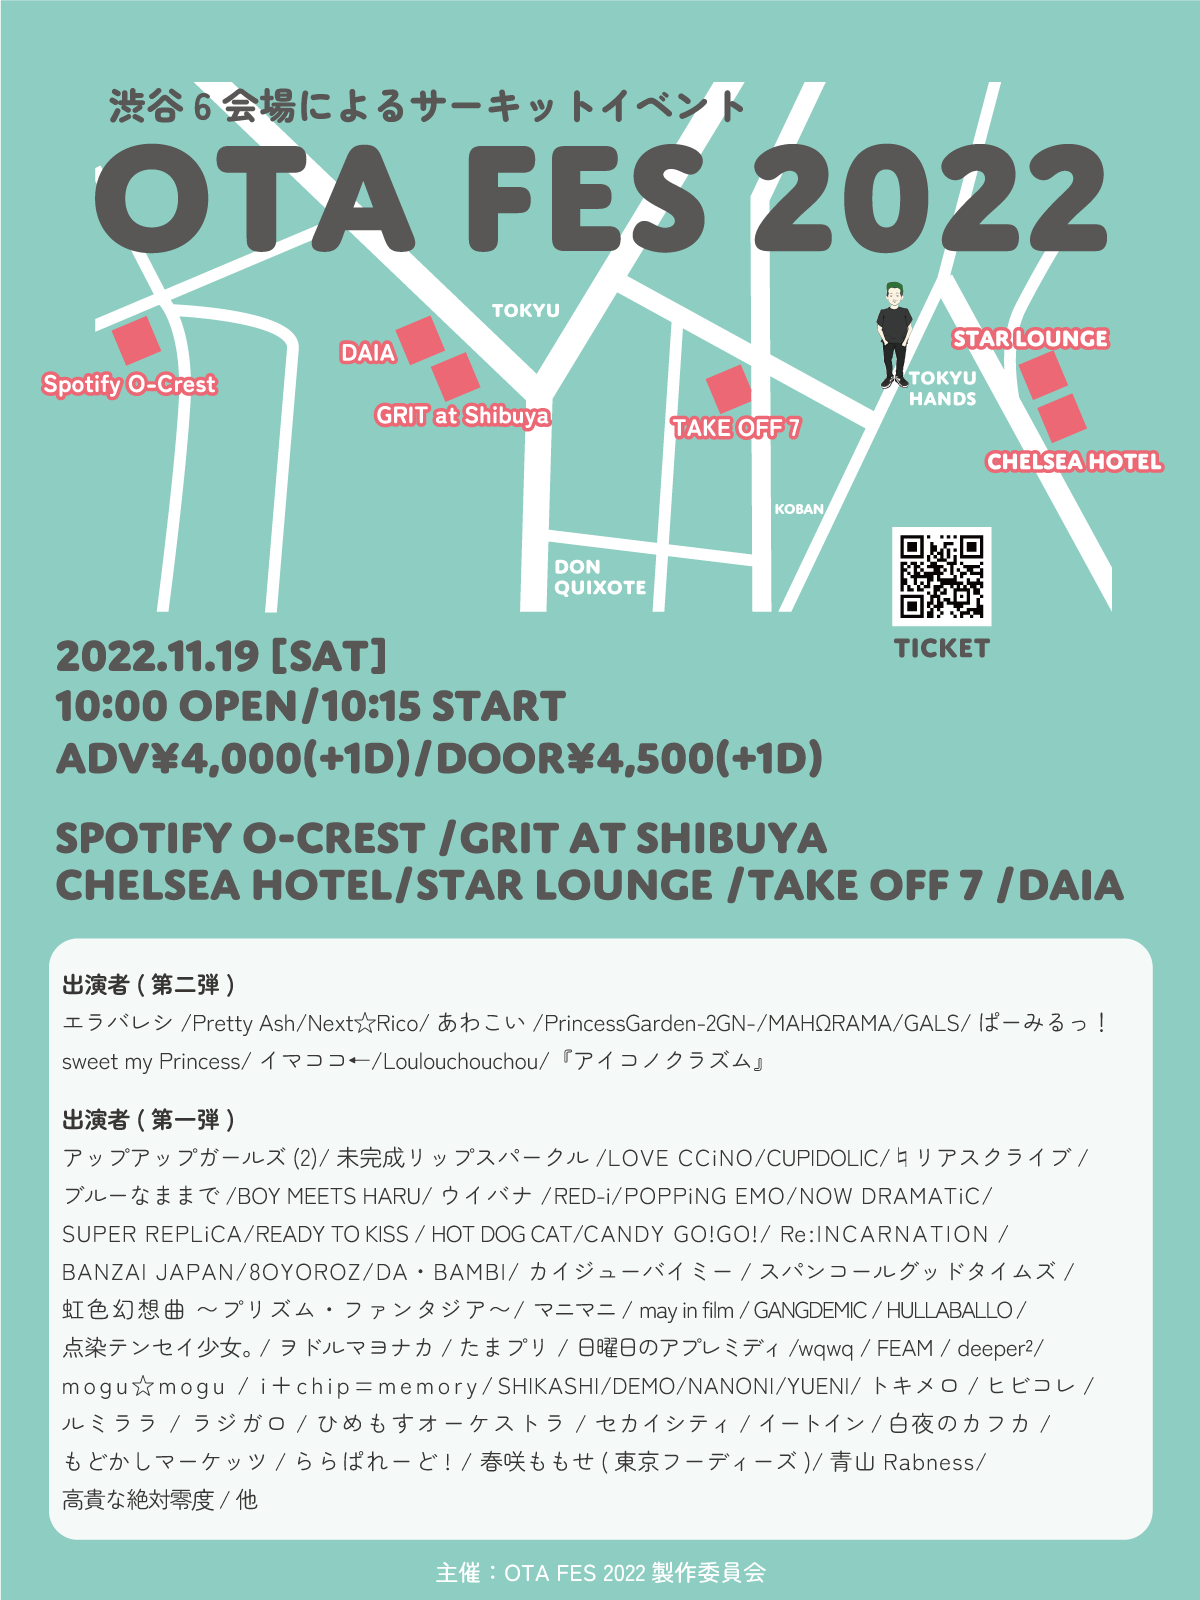 渋谷の街を席巻!!6会場のサーキットイベント、『OTA FES 2022』が11/19に開催!!出演アイドルも第二弾まで発表!!：OTA FES 2022